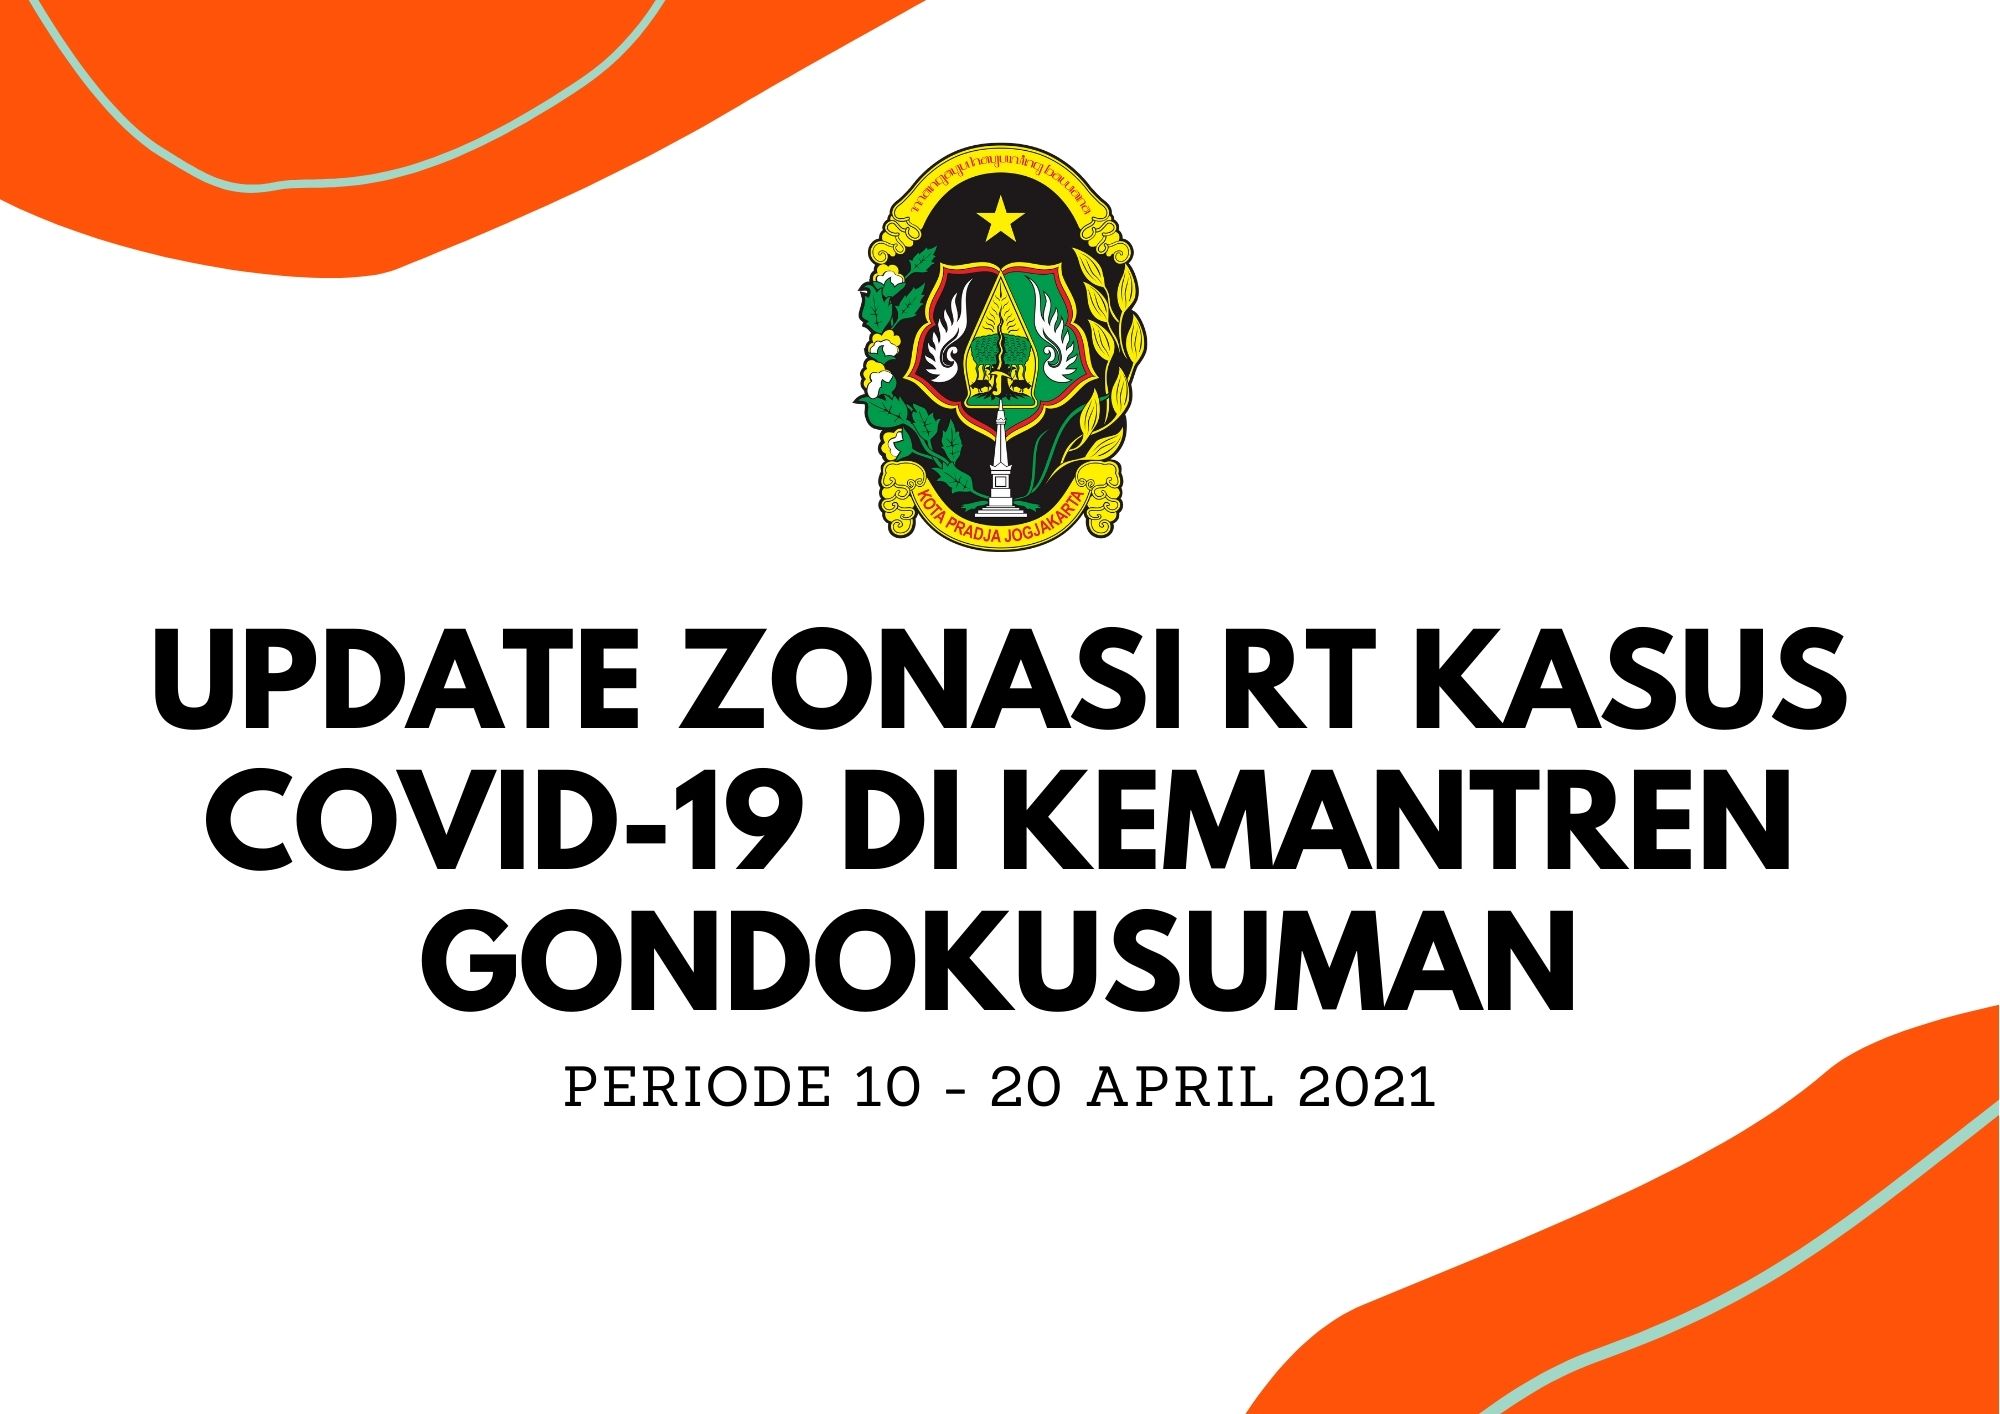 Update Zonasi RT Kasus Covid 19 periode 10 - 20 April 2021 Kemantren Gondokusuman